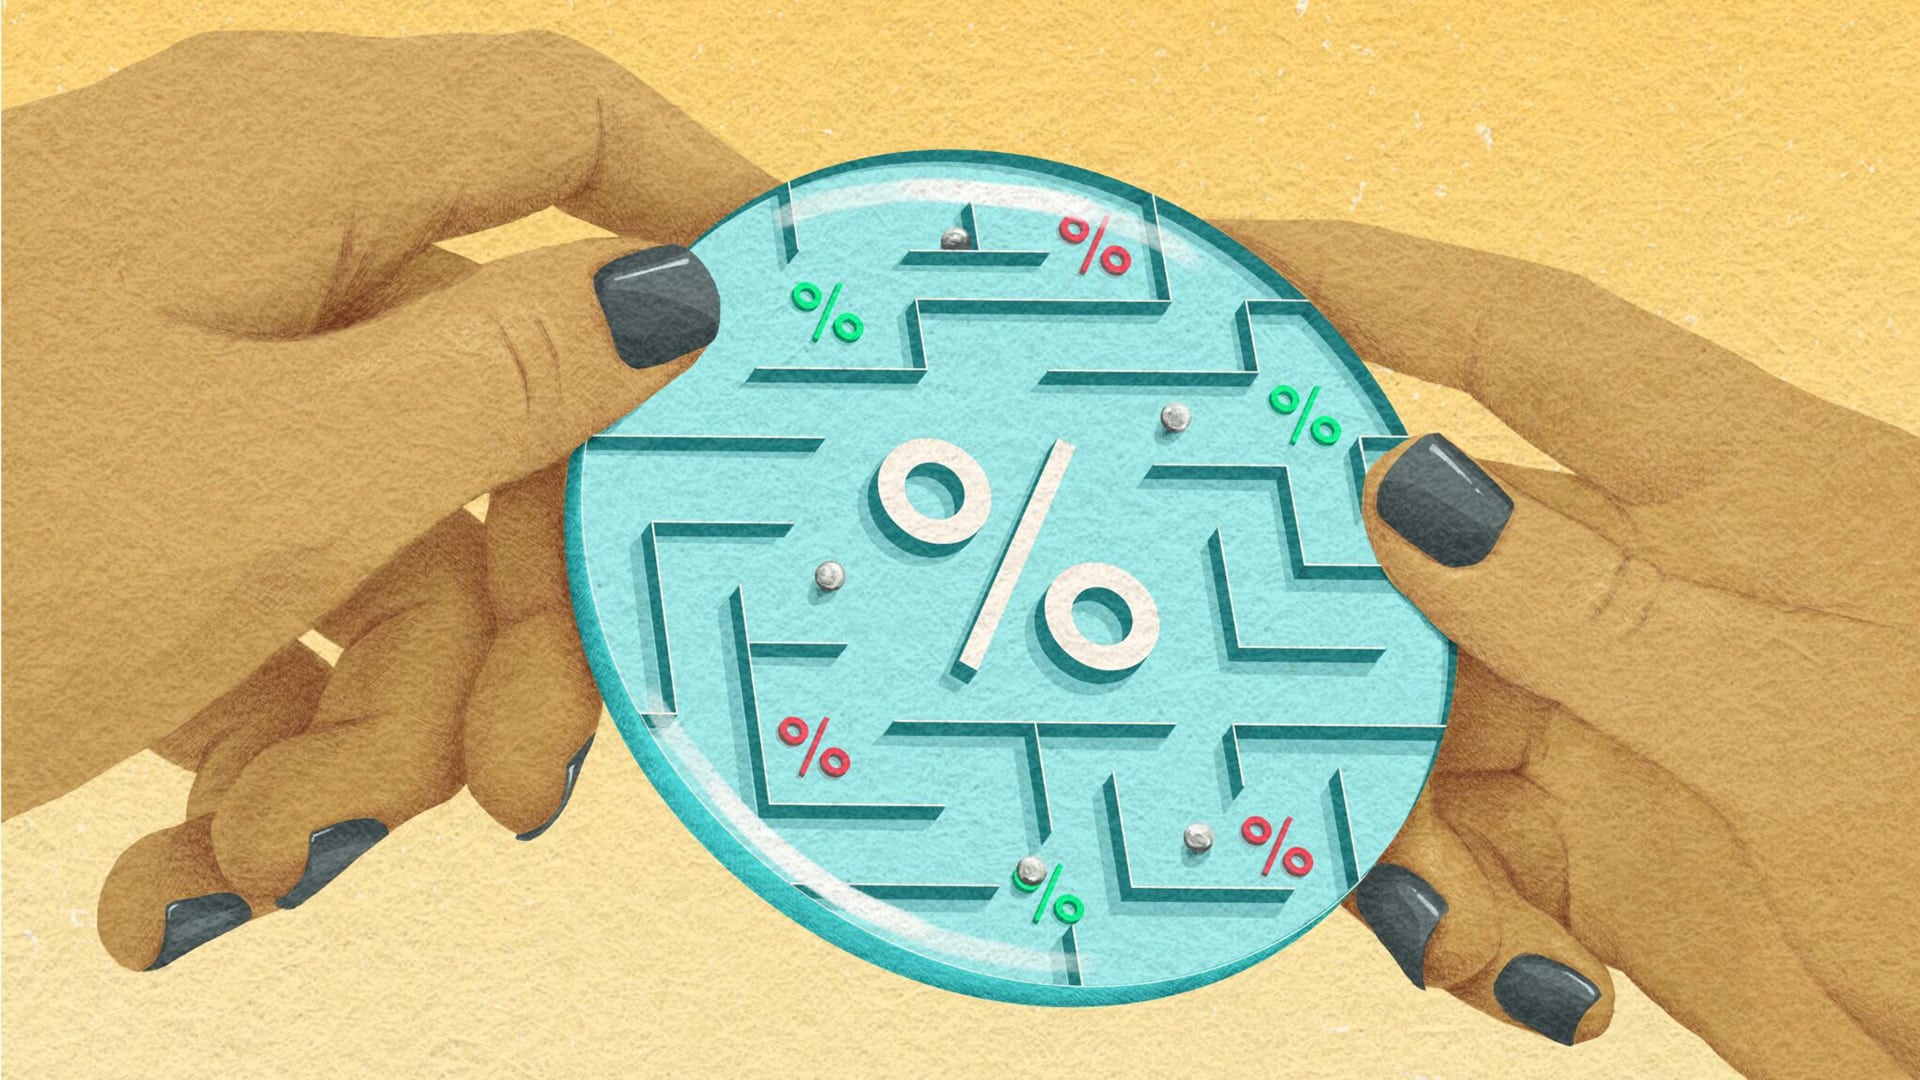 插圖顯示了有人雙手在玩以稅務為主題的彈珠迷宮遊戲。